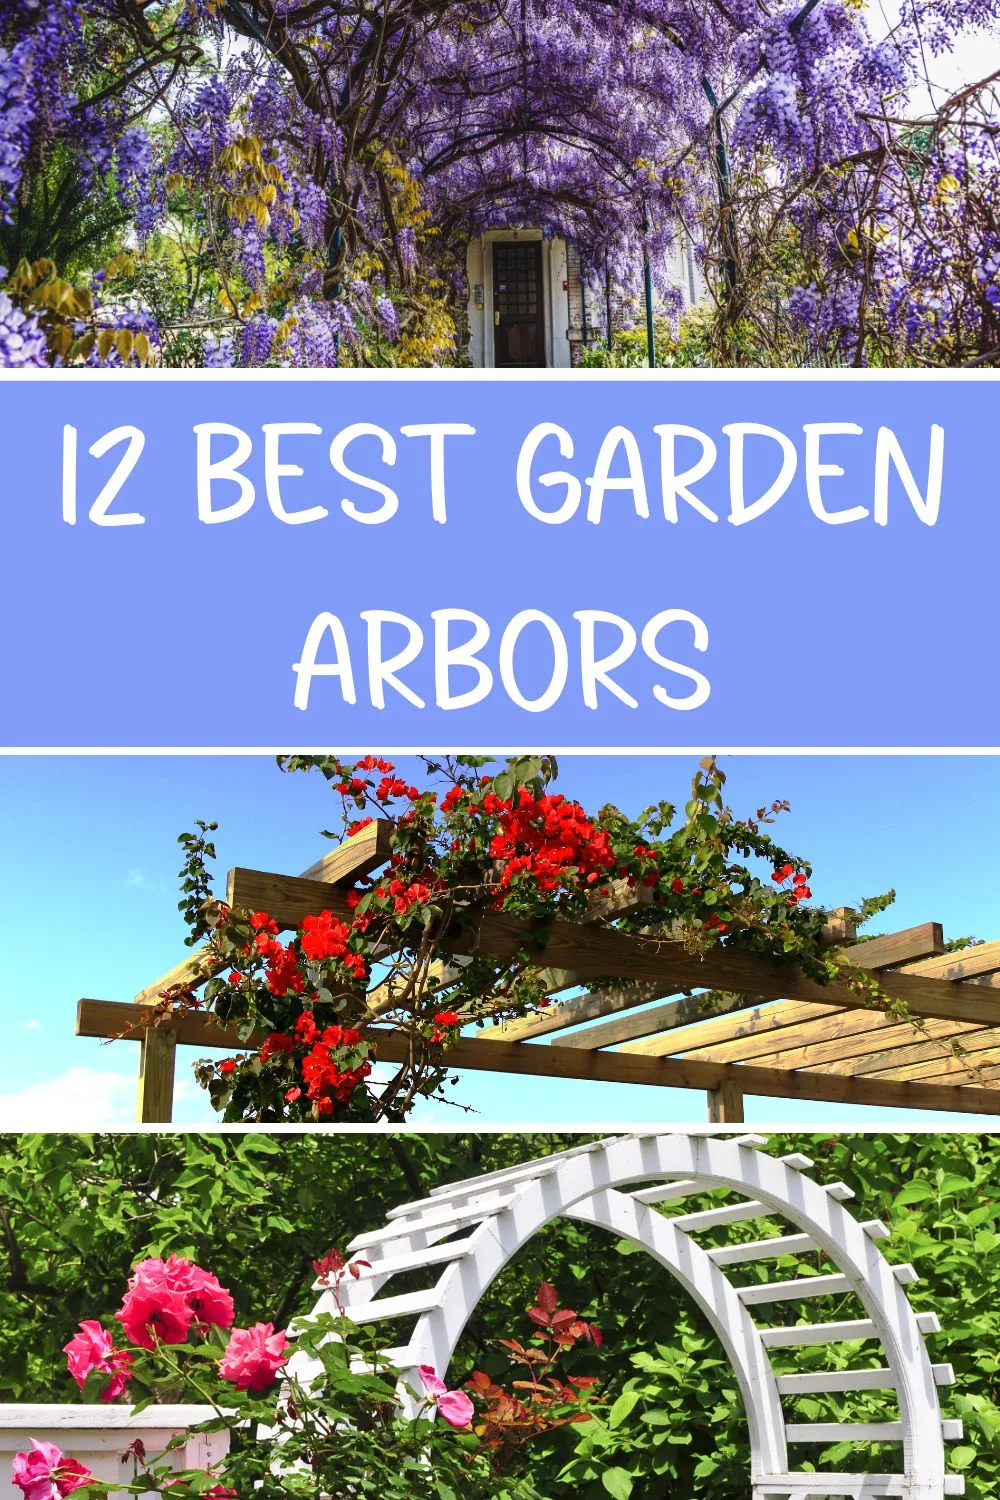 12 Best garden arbors.